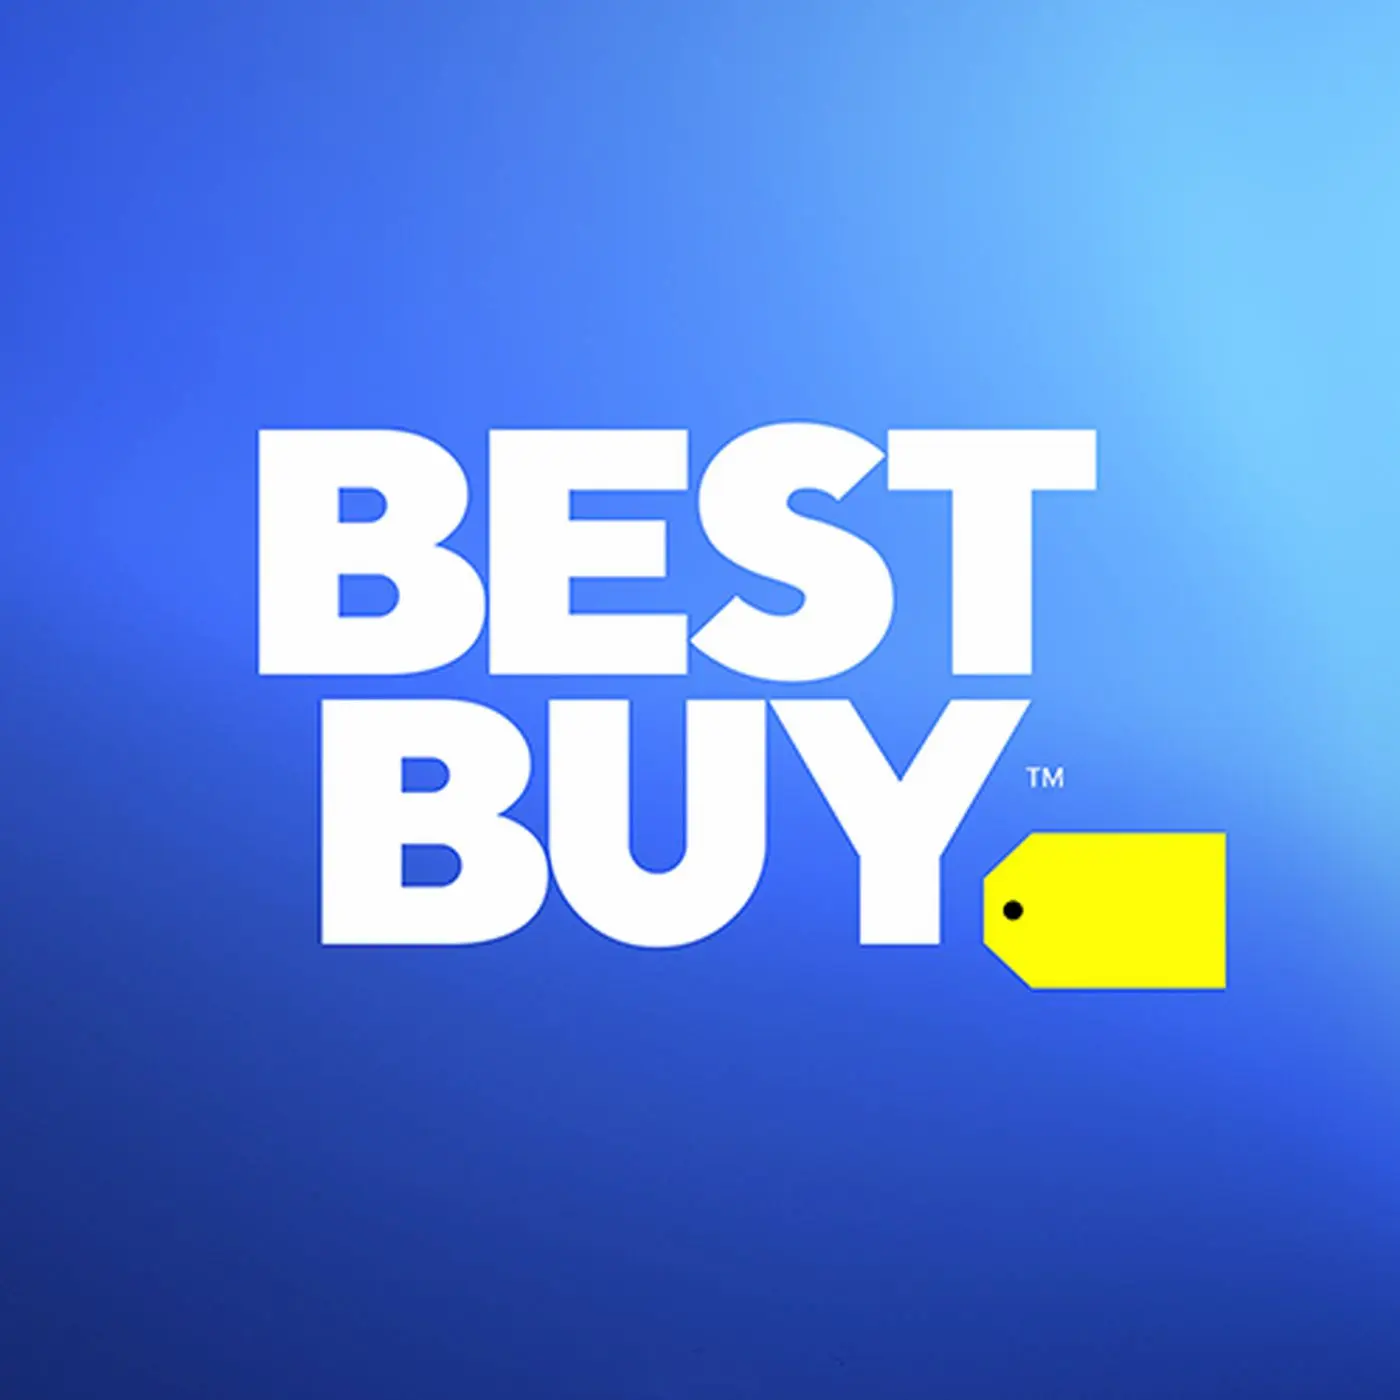 Samsung Galaxy S23 — oferta wprowadzenia najlepszego zakupu